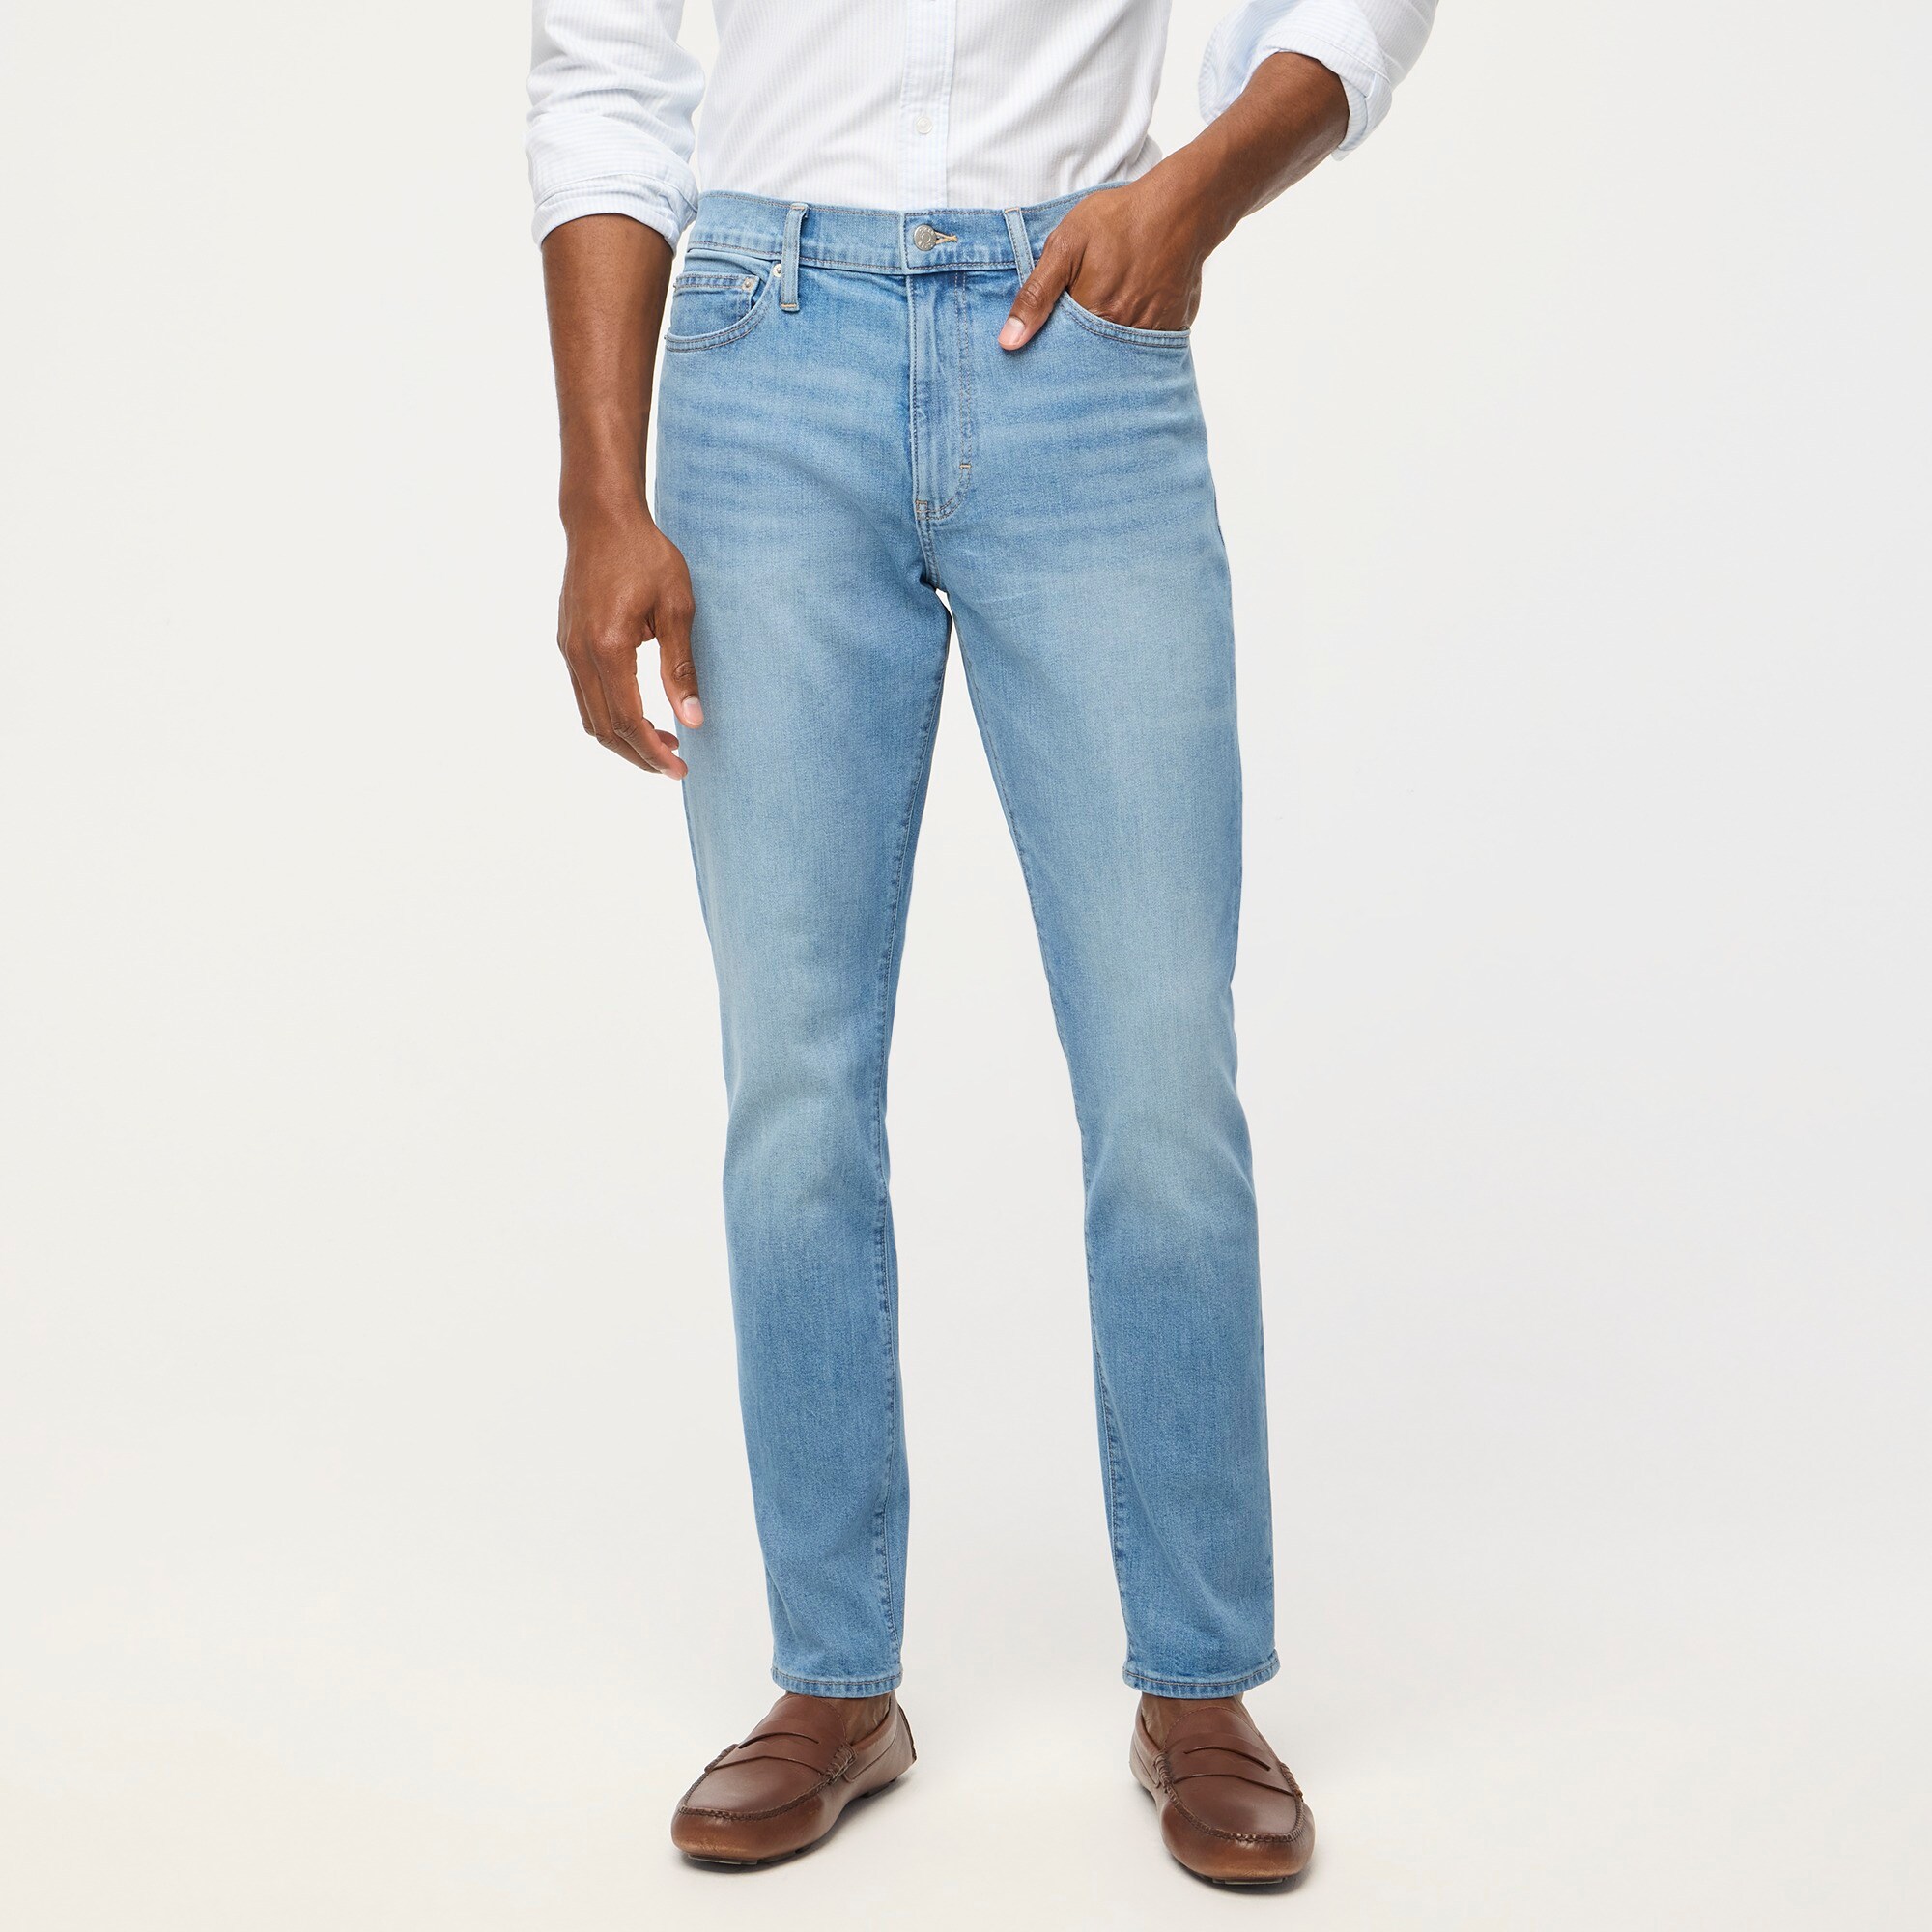 mens Athletic slim-fit jean in signature flex